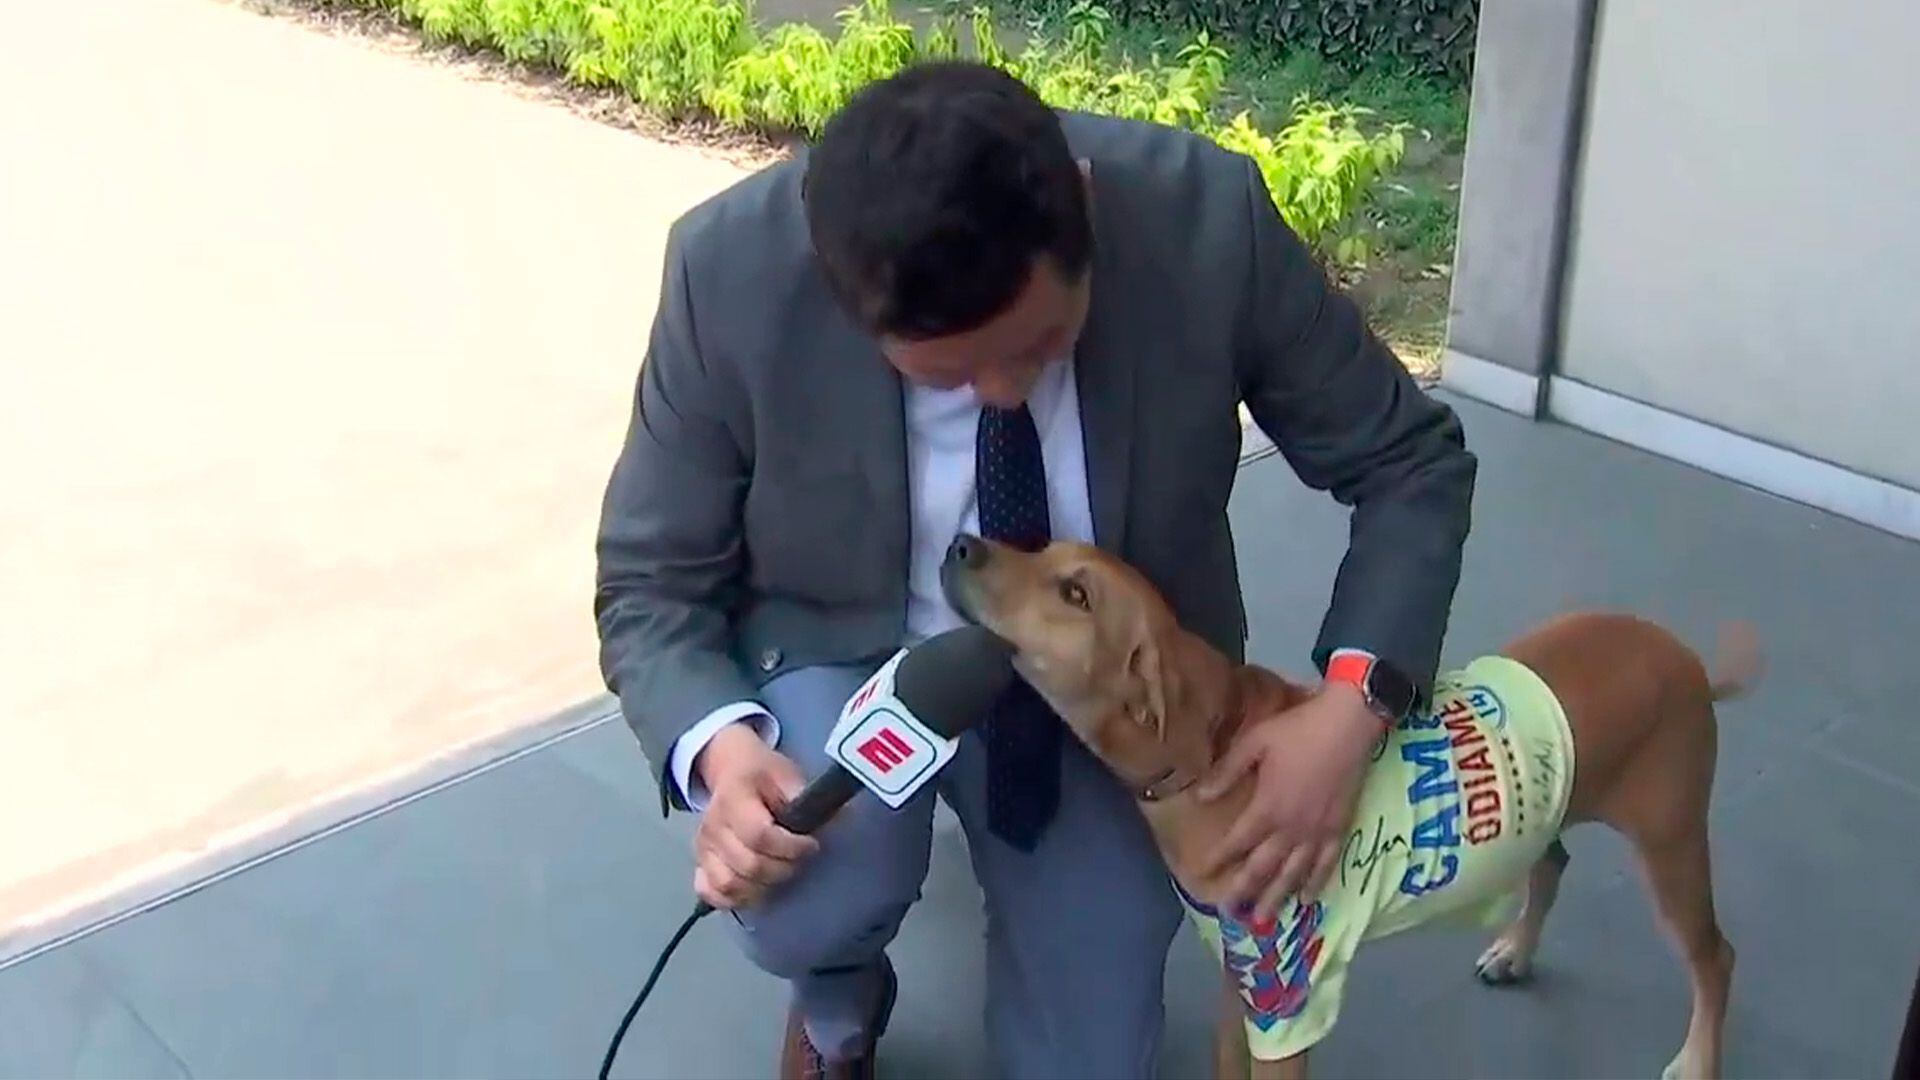 Un perrito con la playera del Club América apareció en transmisión en vivo